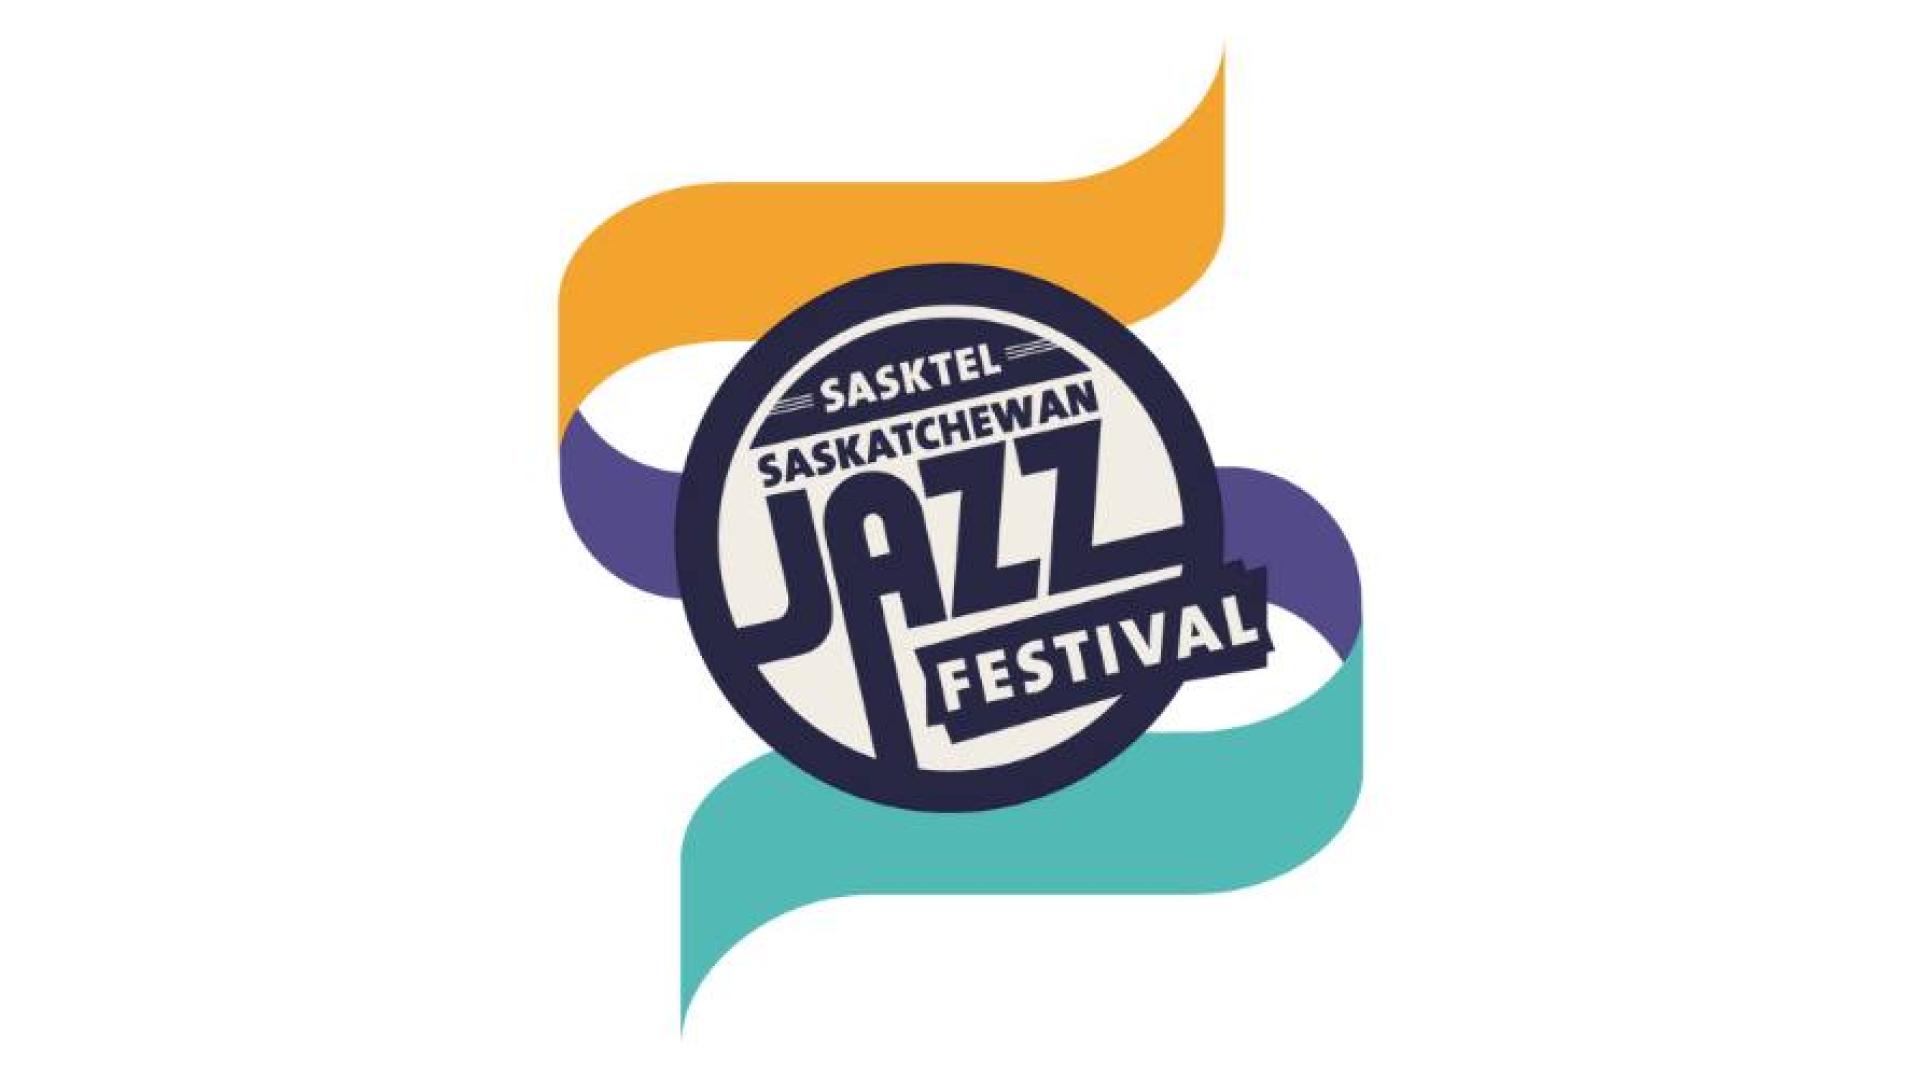 Sasktel SK Jazz Fest Logo